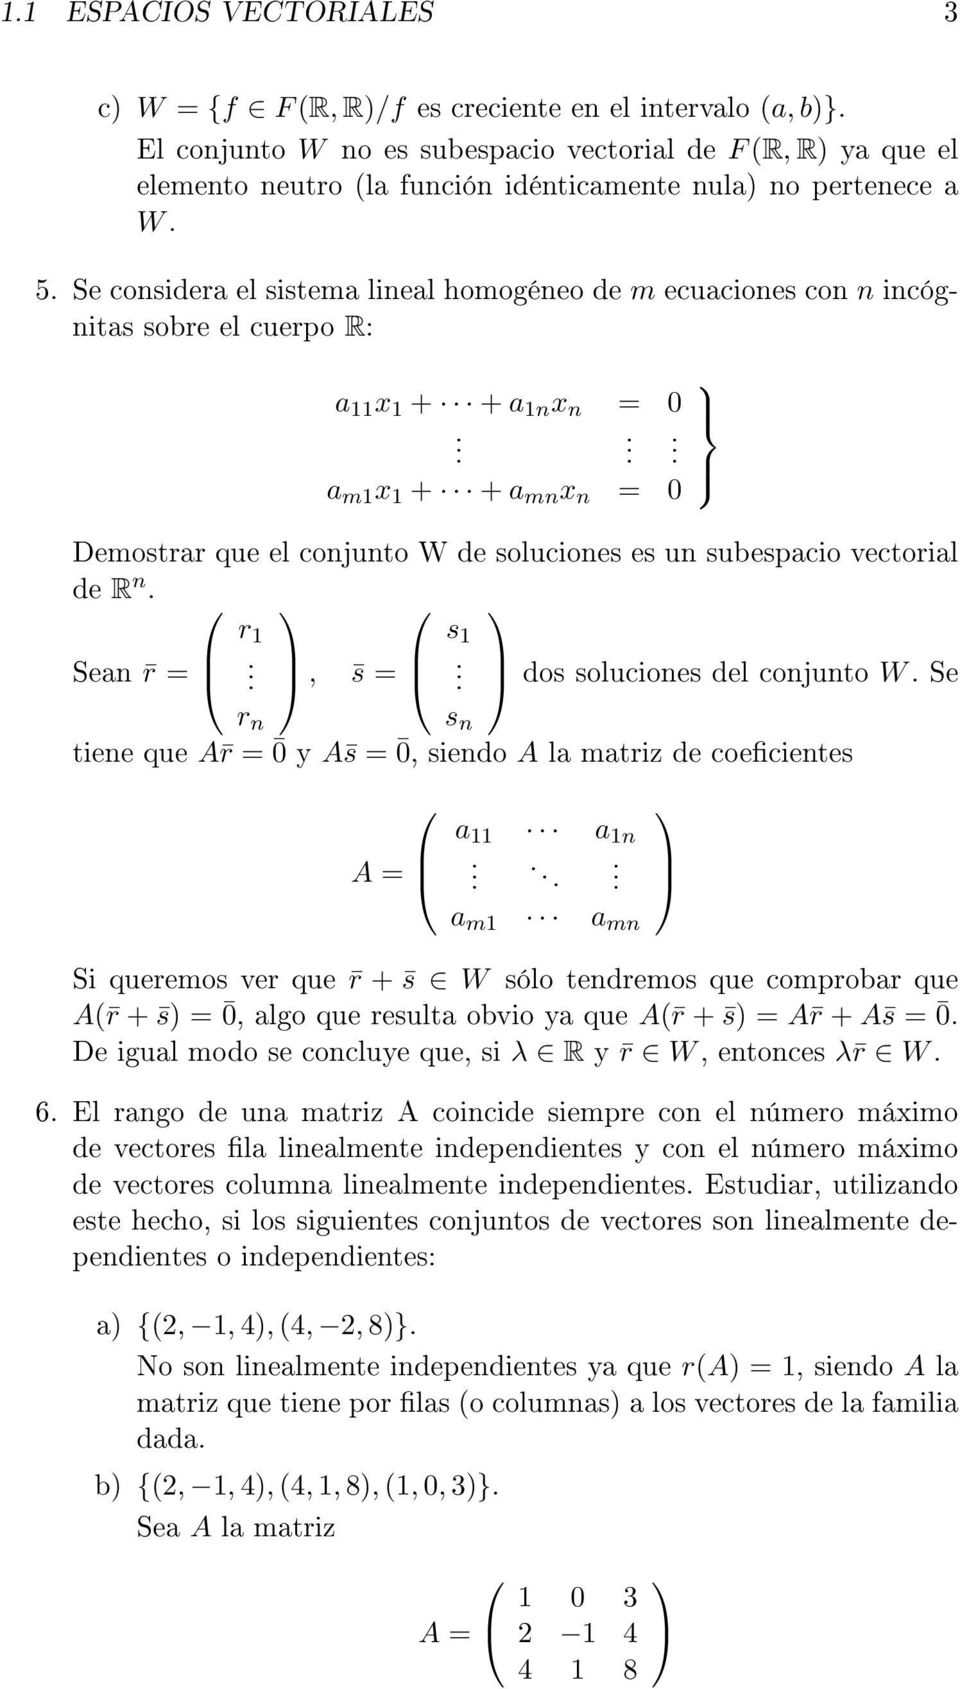 Se considera el sistema lineal homogéneo de m ecuaciones con n incógnitas sobre el cuerpo R: a 11 x 1 + + a 1n x n = 0.